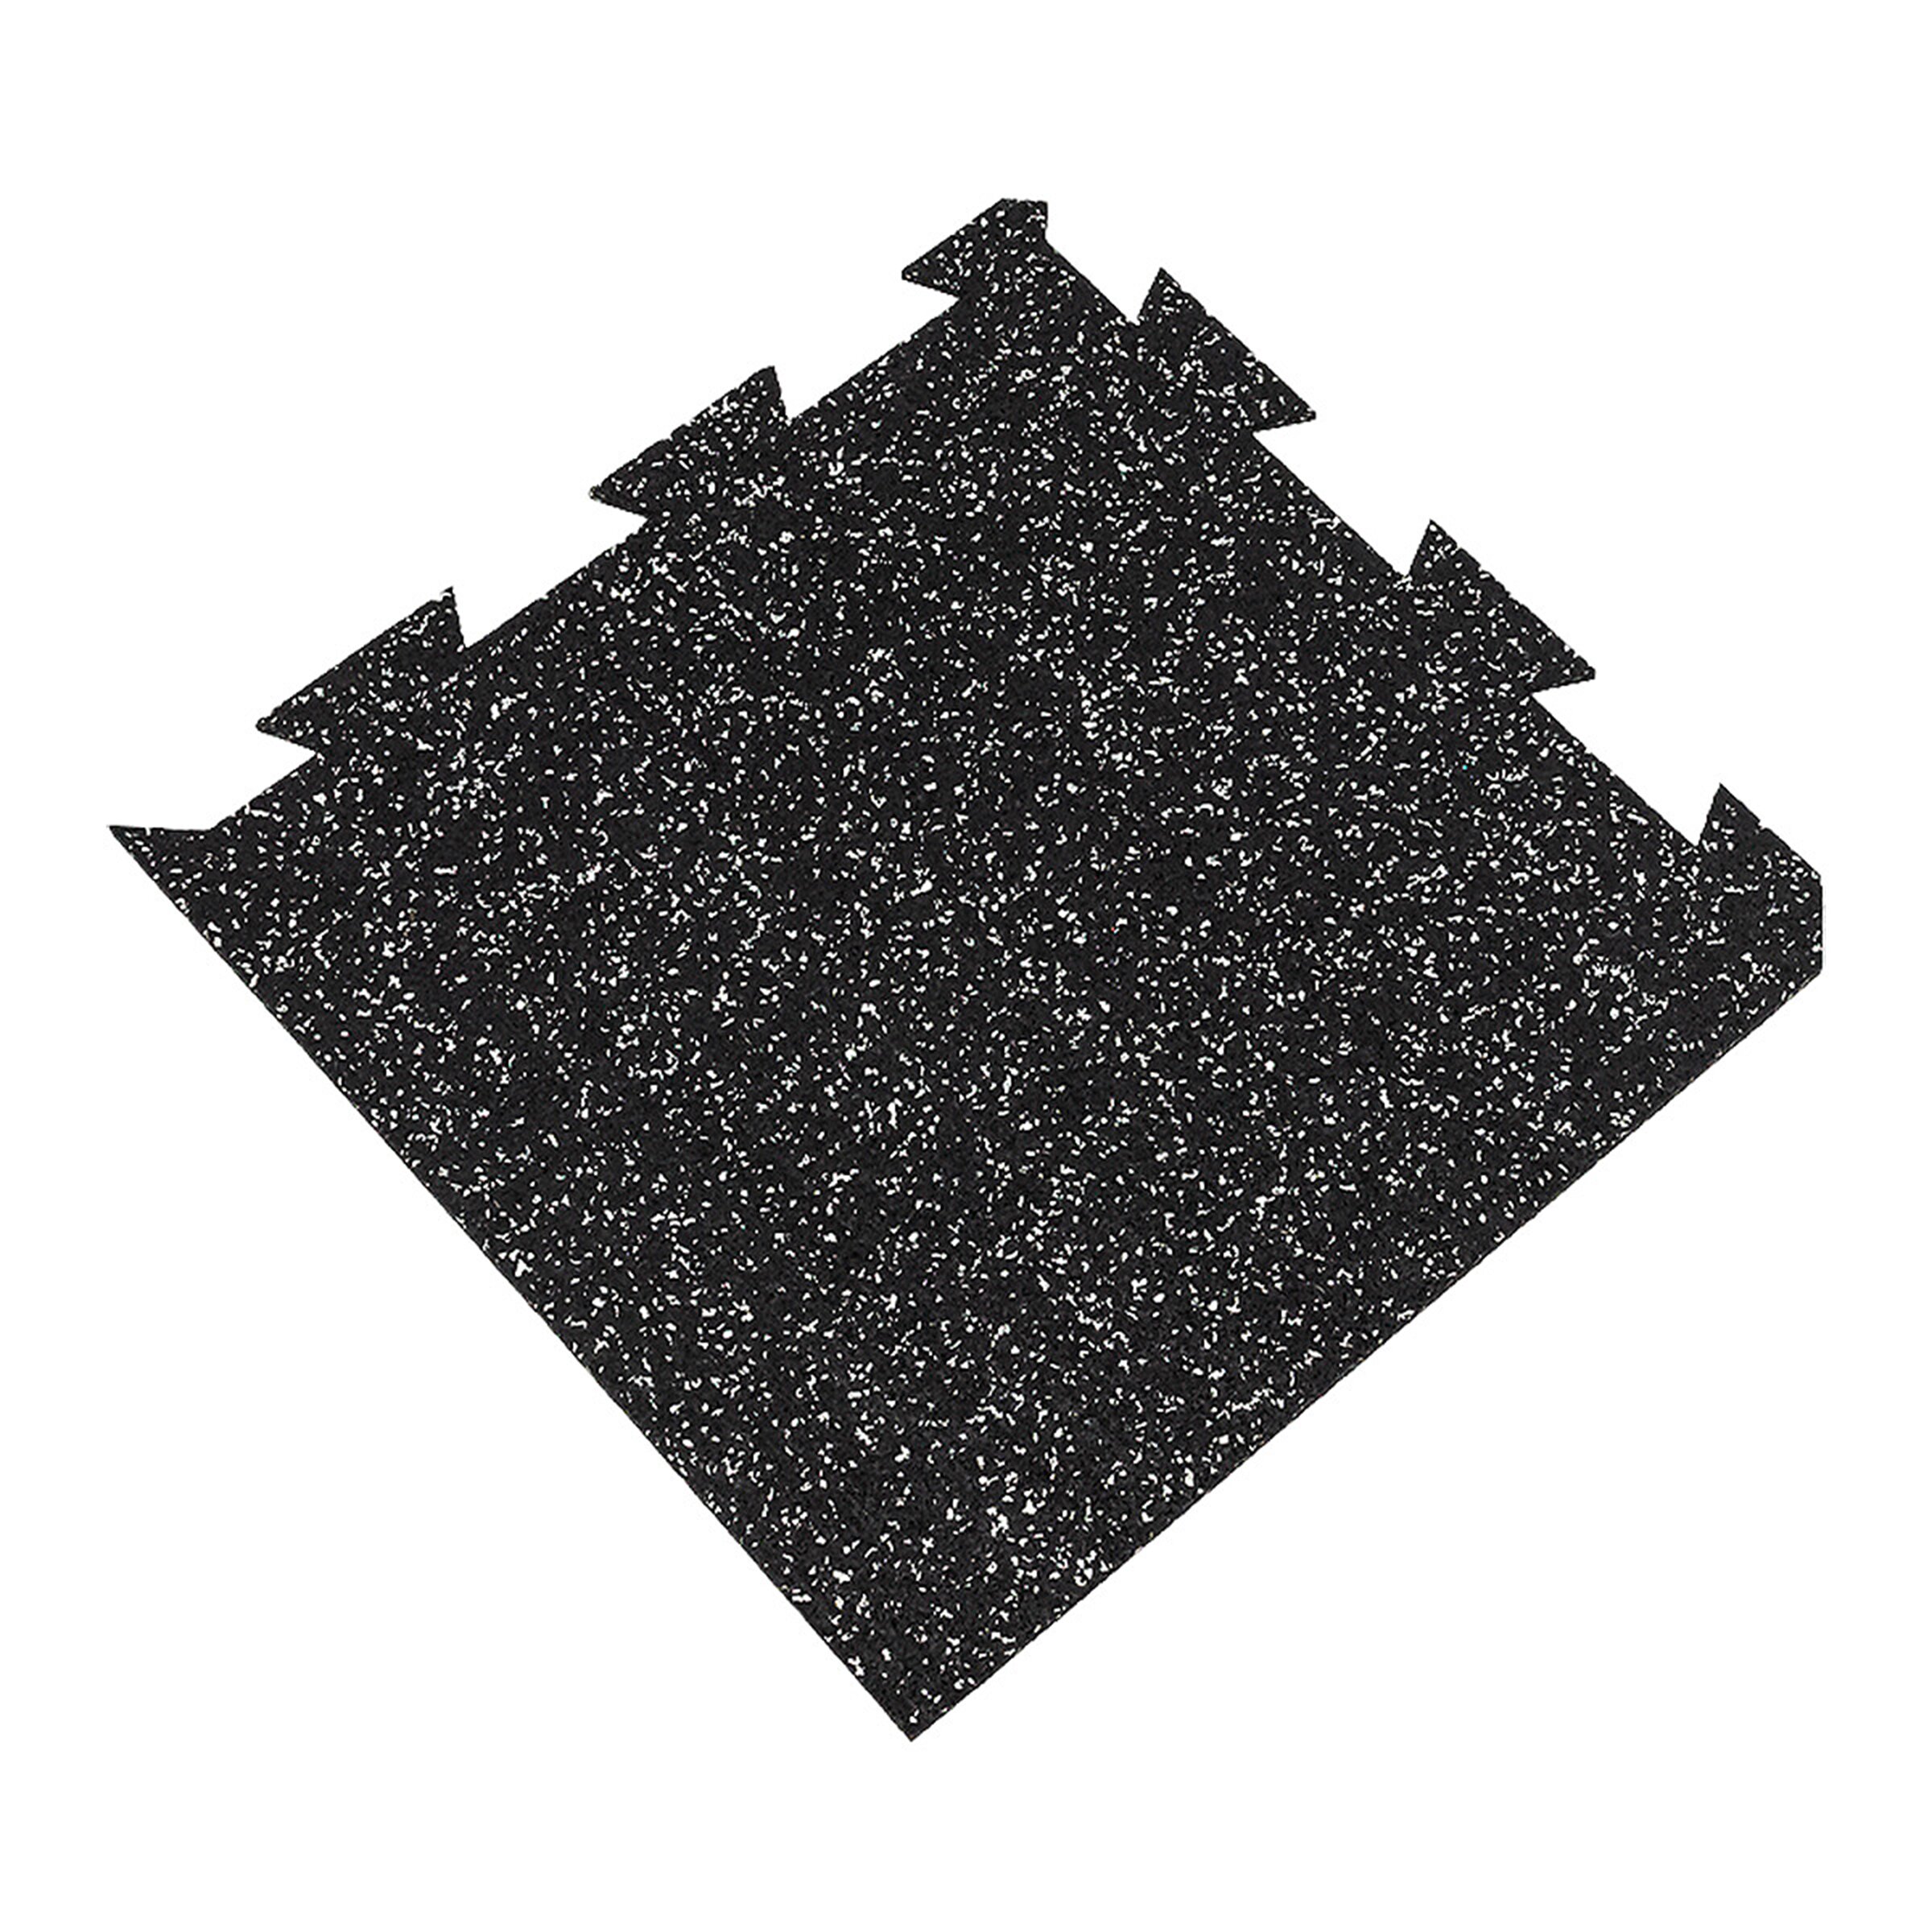 Černo-bílá gumová puzzle modulová dlažba FLOMA SF1050 FitFlo - délka 50 cm, šířka 50 cm, výška 1,6 cm